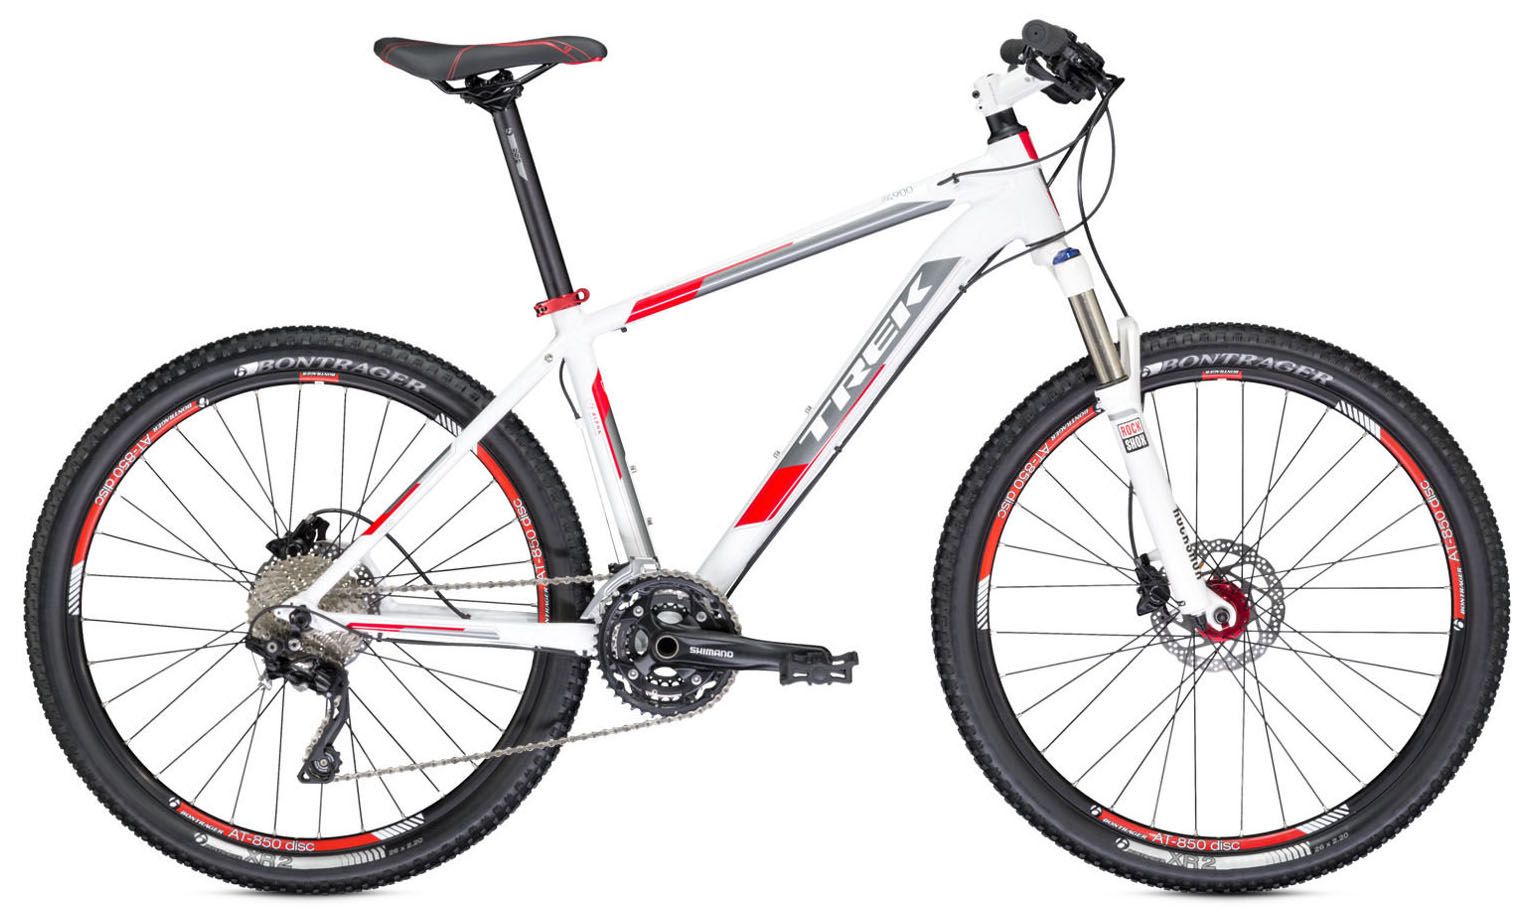  Велосипед Trek 4900 2014